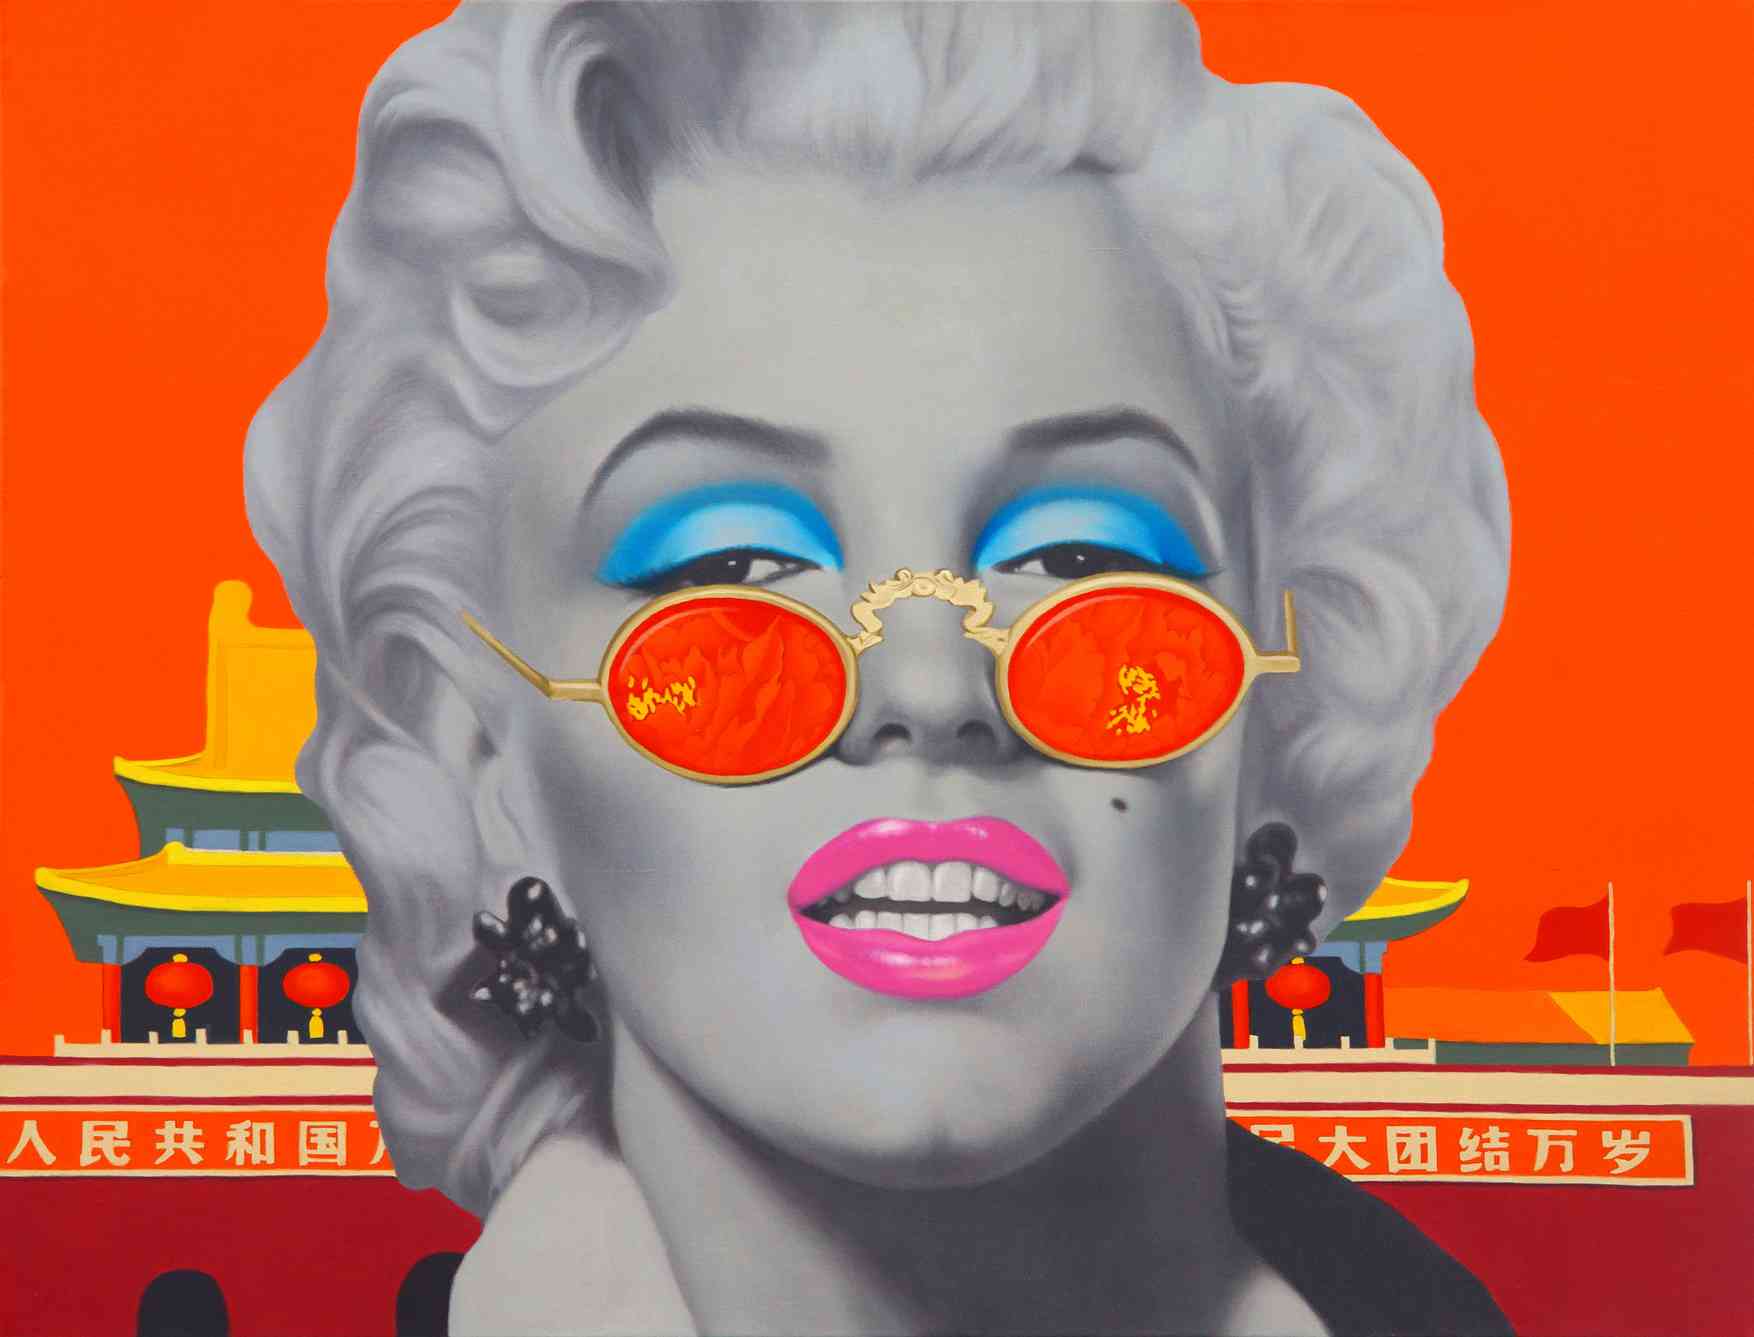 致敬玛丽莲 My Respect for Marilyn 100x130cm 布面油画 oil on canvas